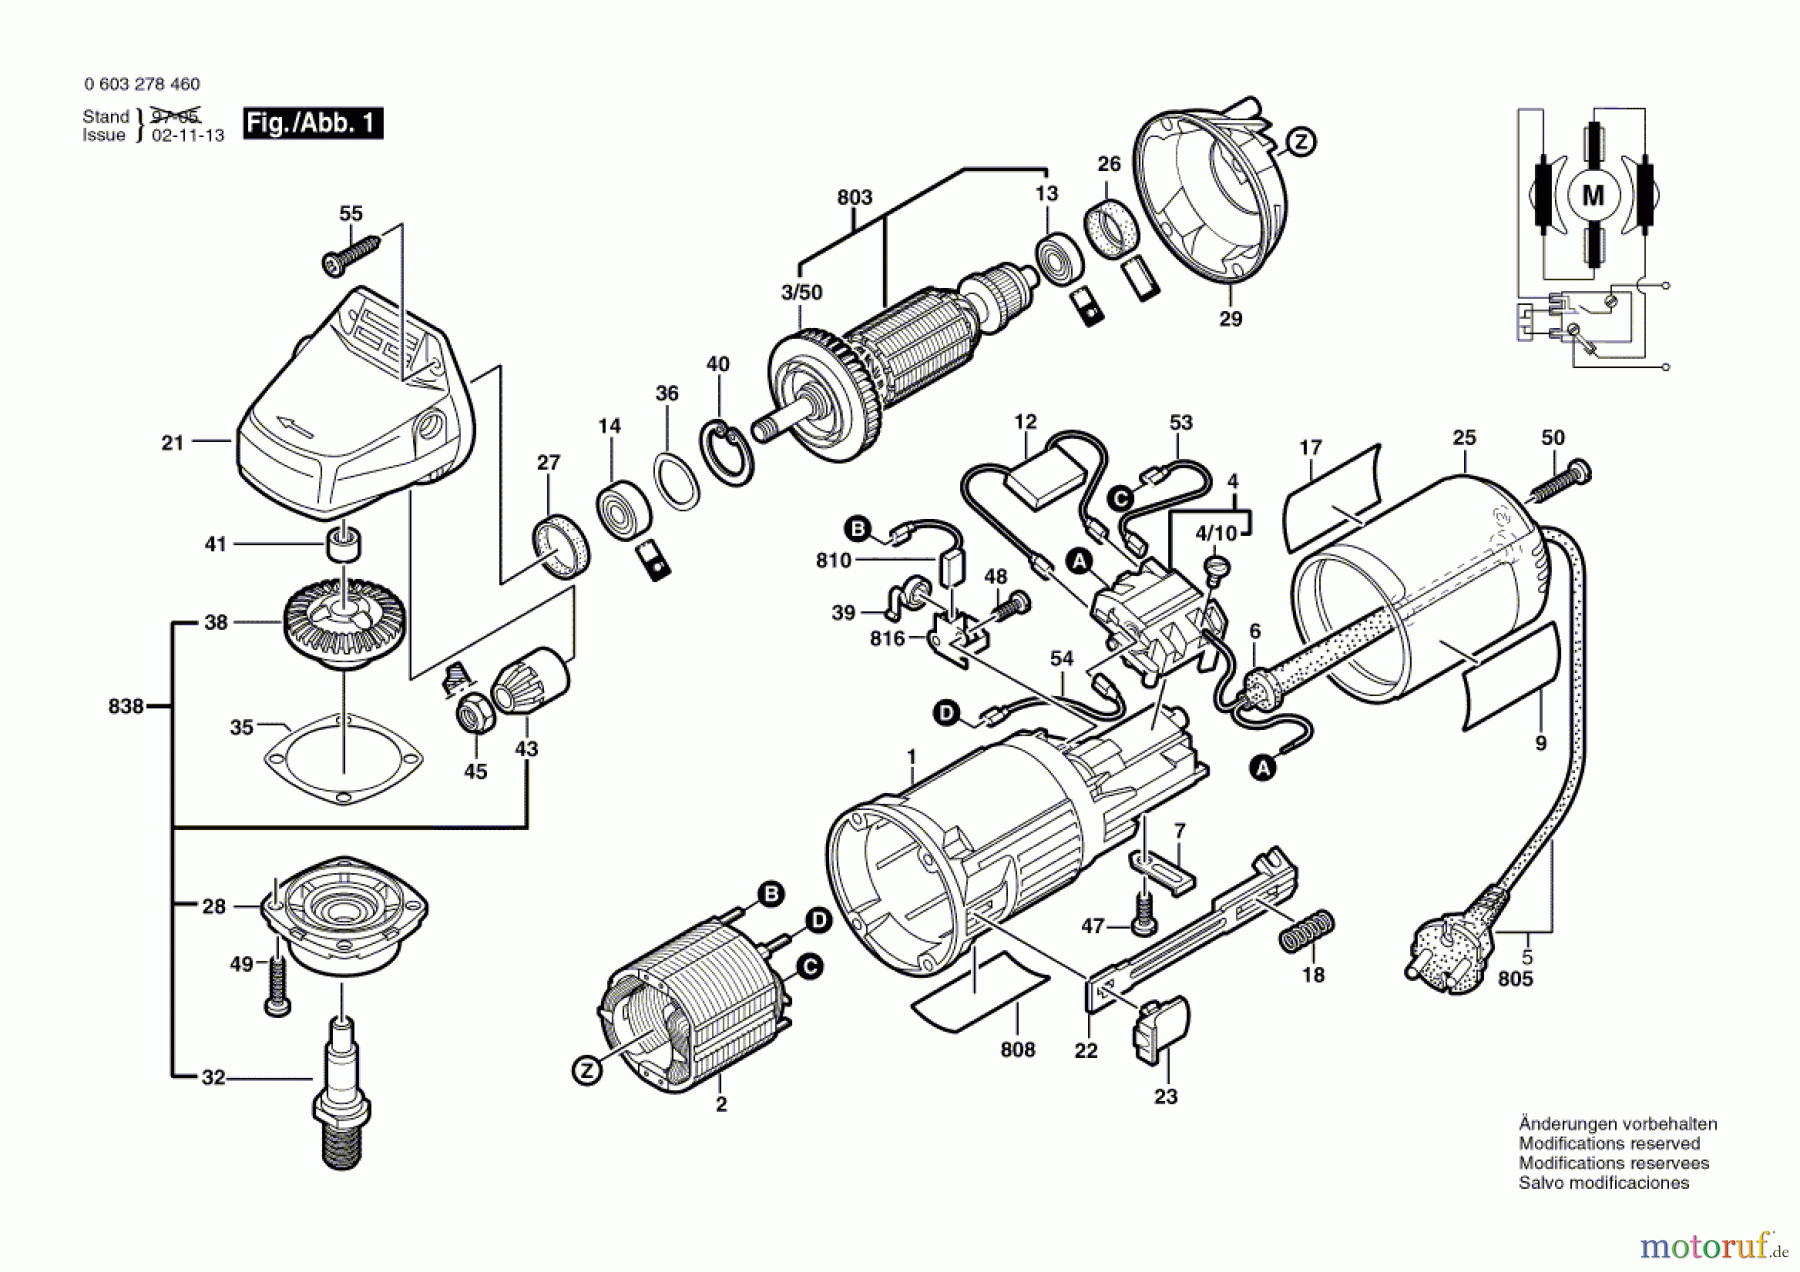  Bosch Werkzeug Winkelschleifer PWS 550 Seite 1